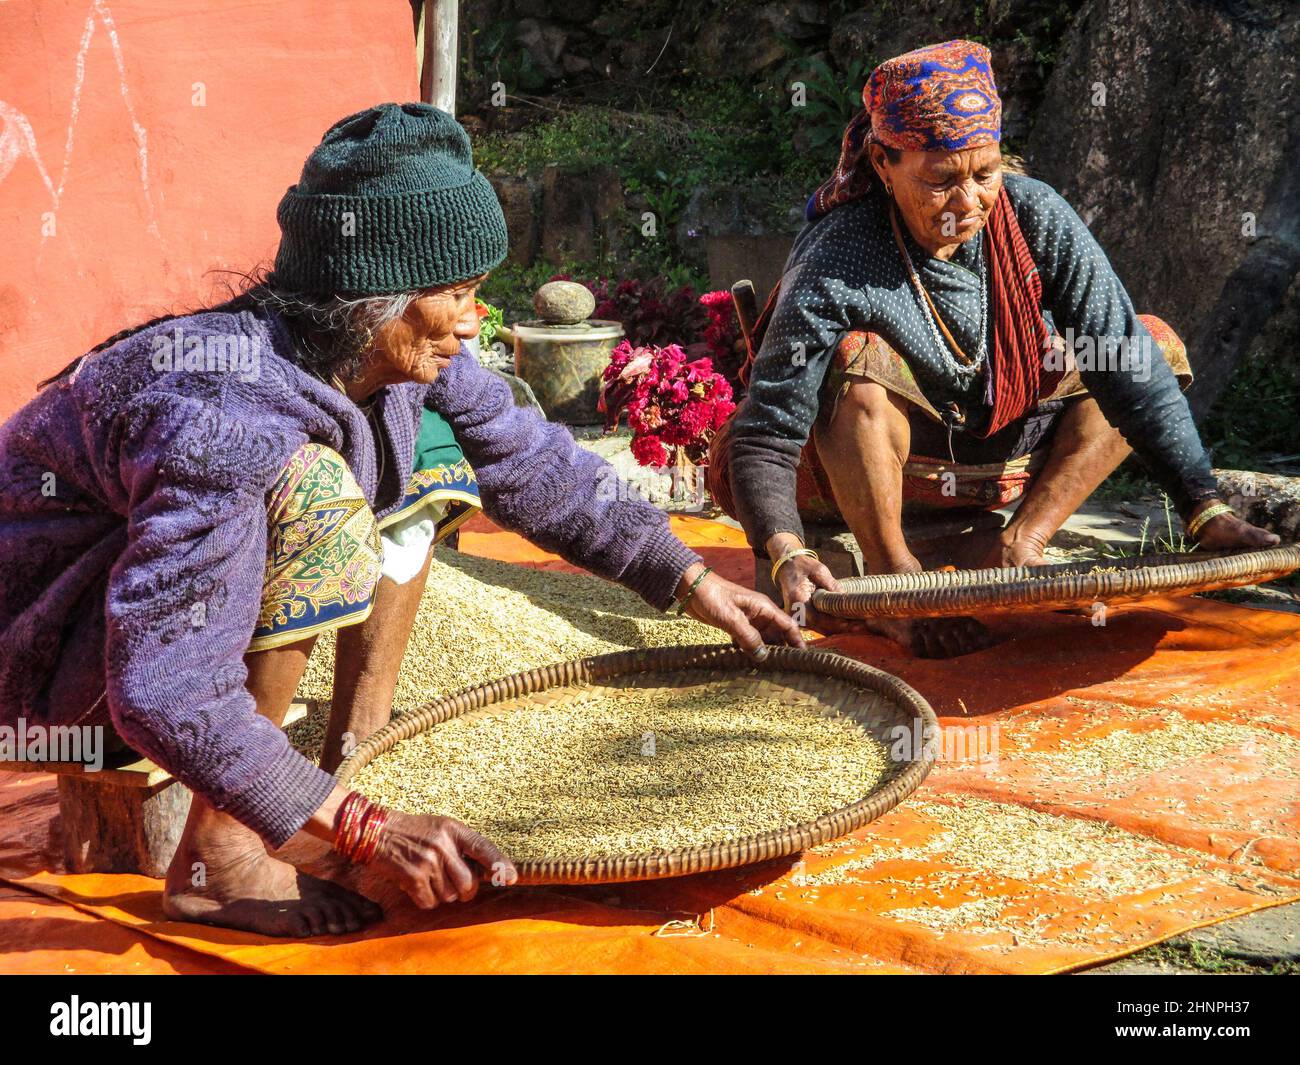 les vieilles femmes népalaises nettoient le maïs de manière traditionnelle avec des paniers. Banque D'Images